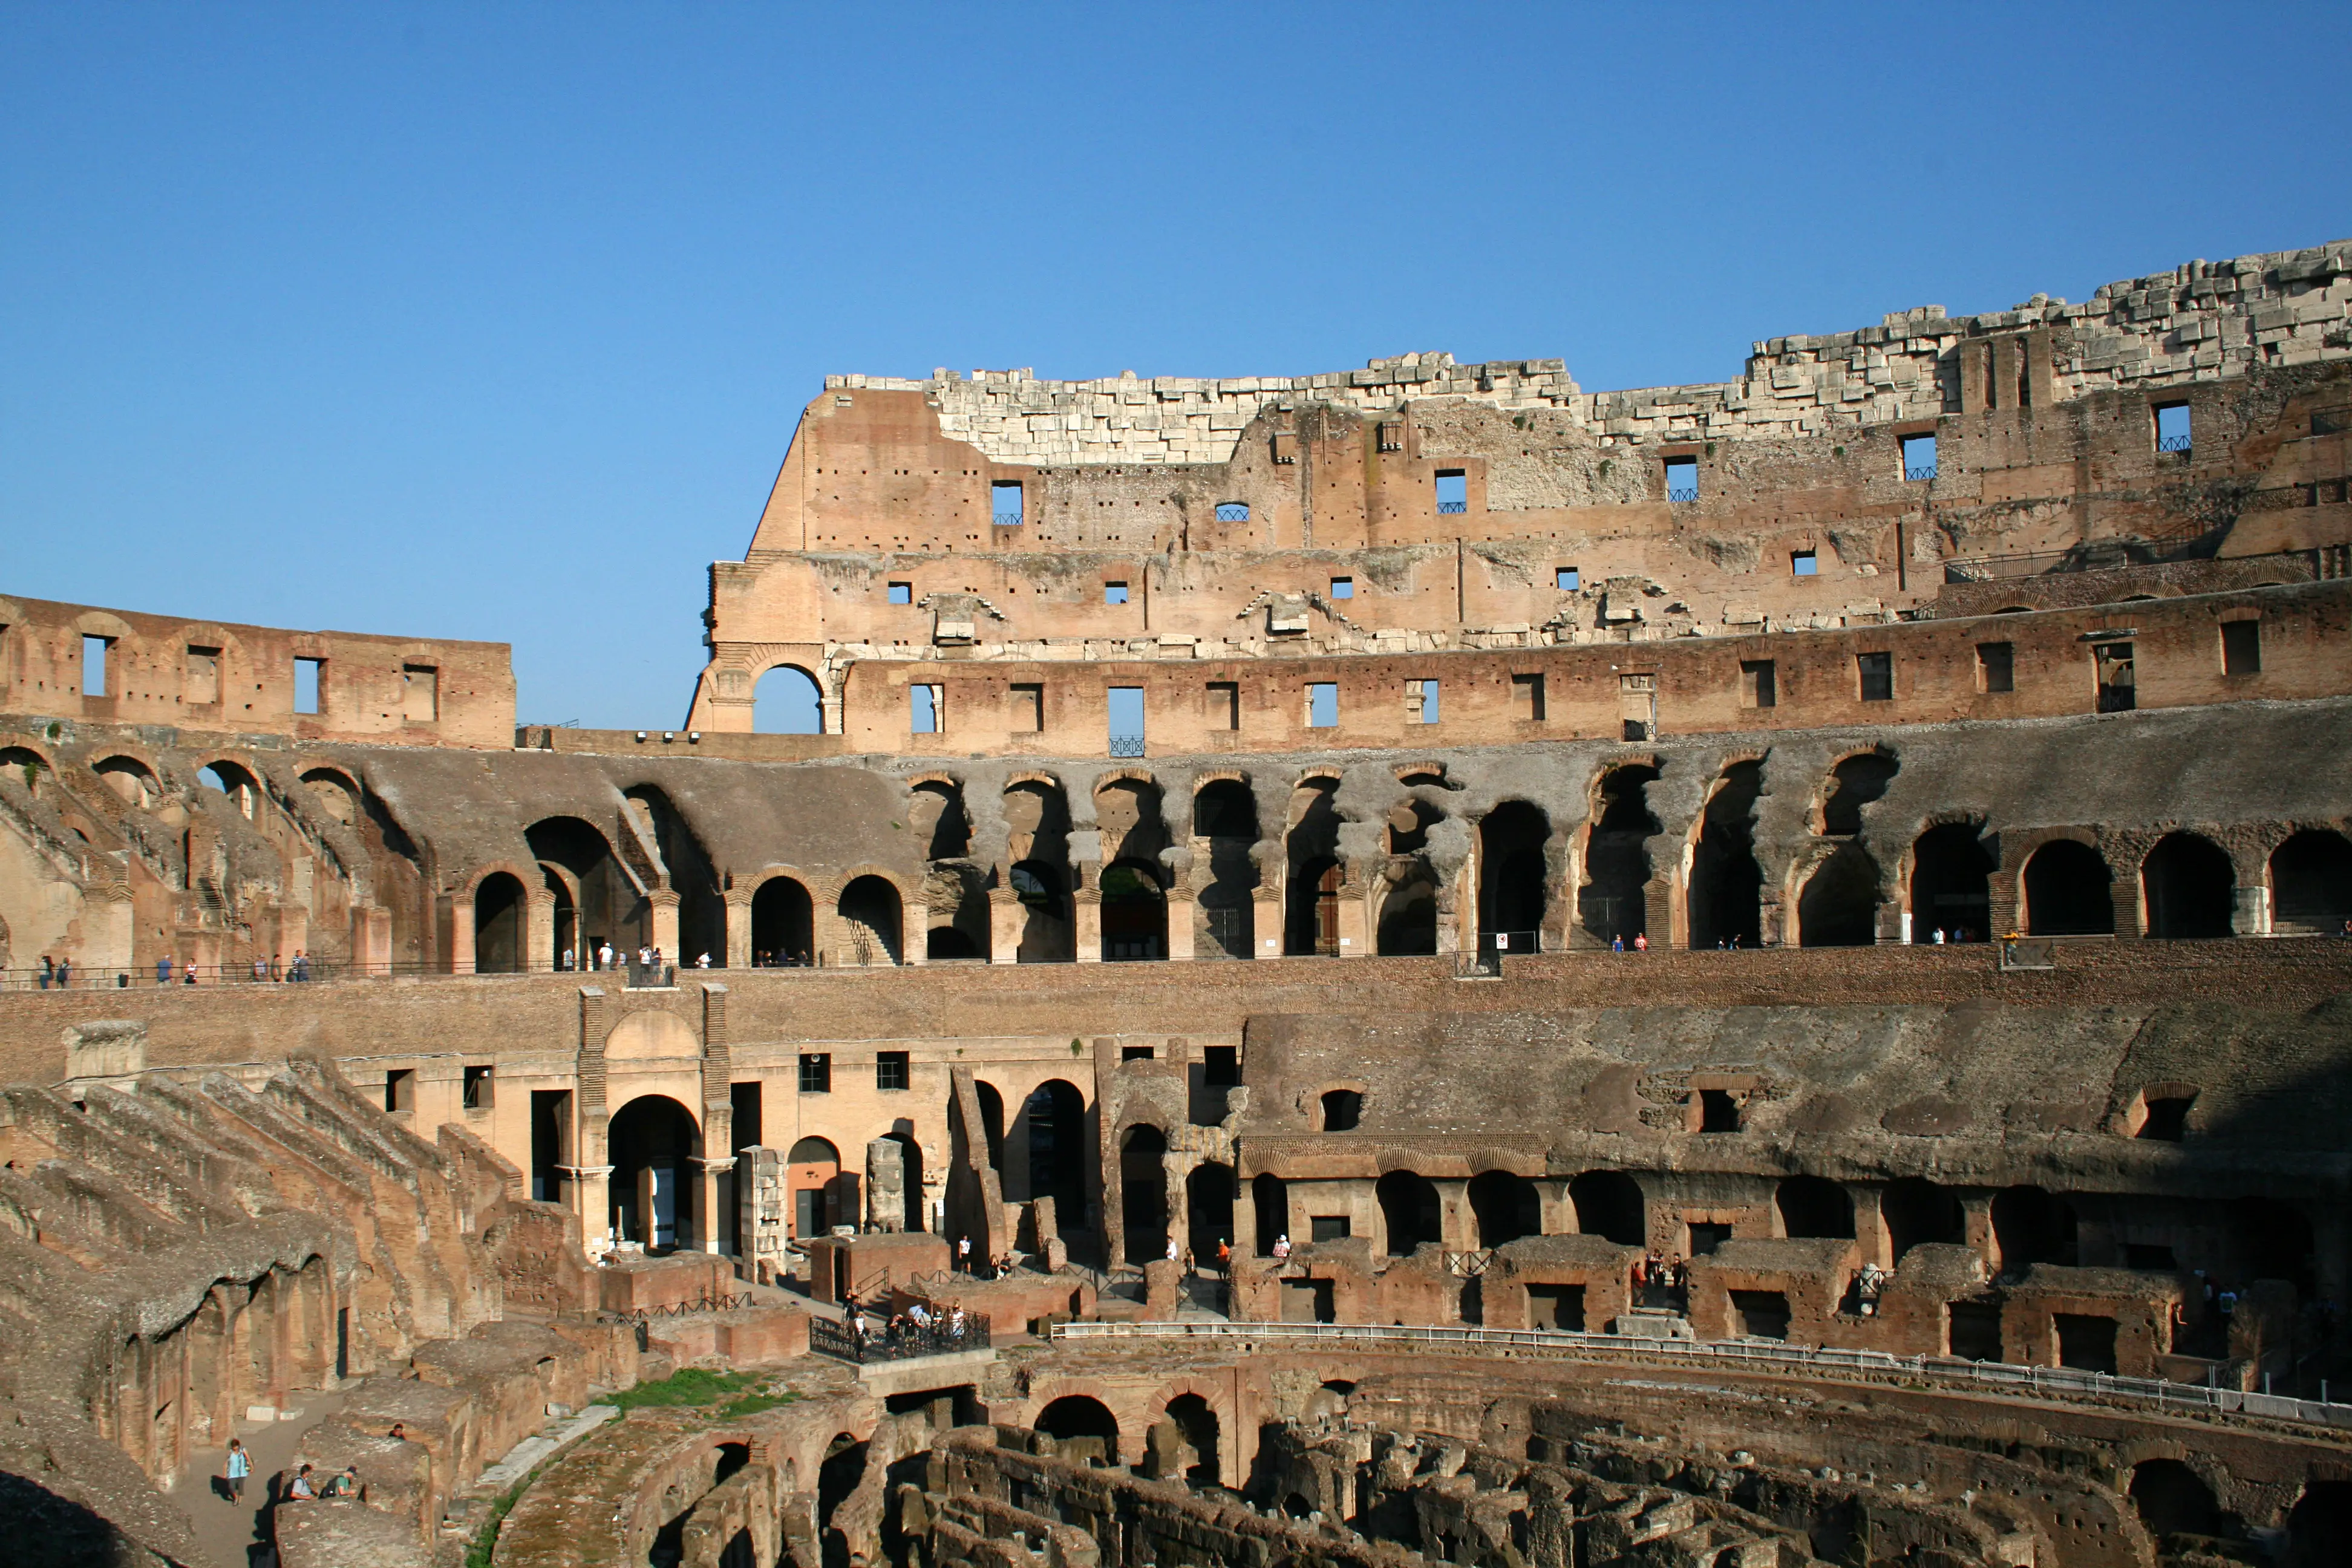 Rome Colosseum inside